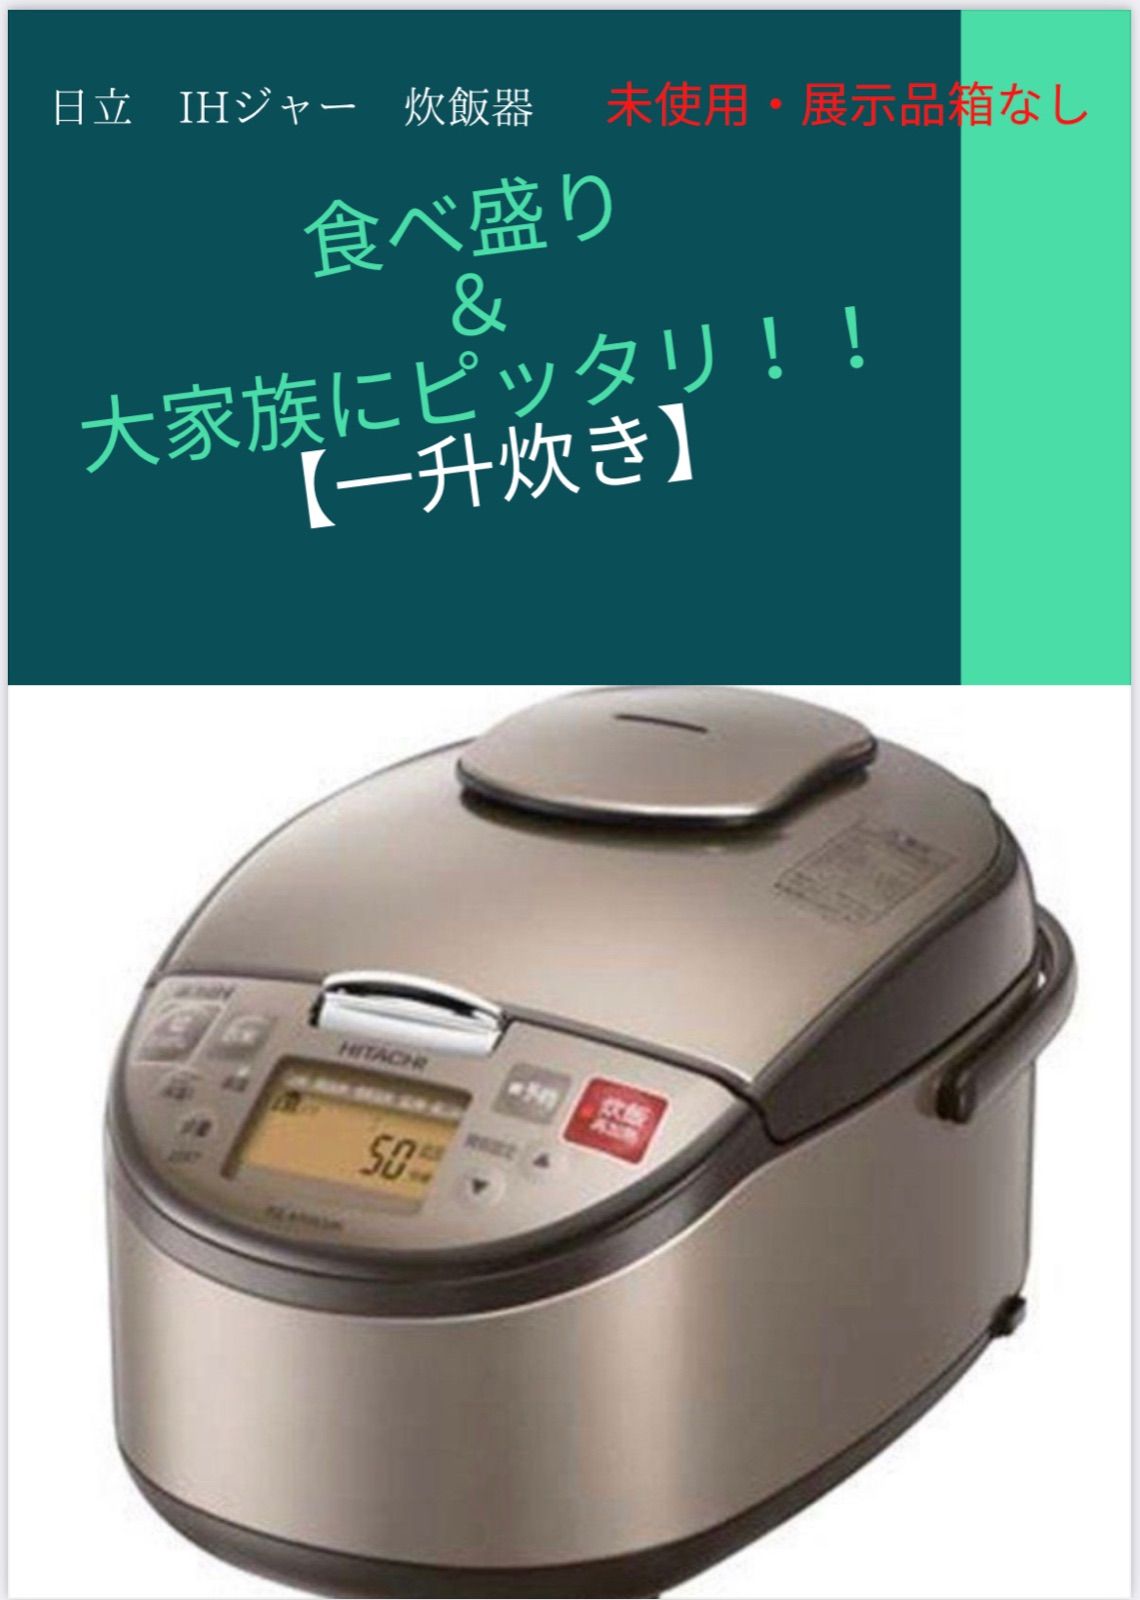 一升炊】日立 IHジャー炊飯器 RZ-A18KSM 未使用展示品 - メルカリ